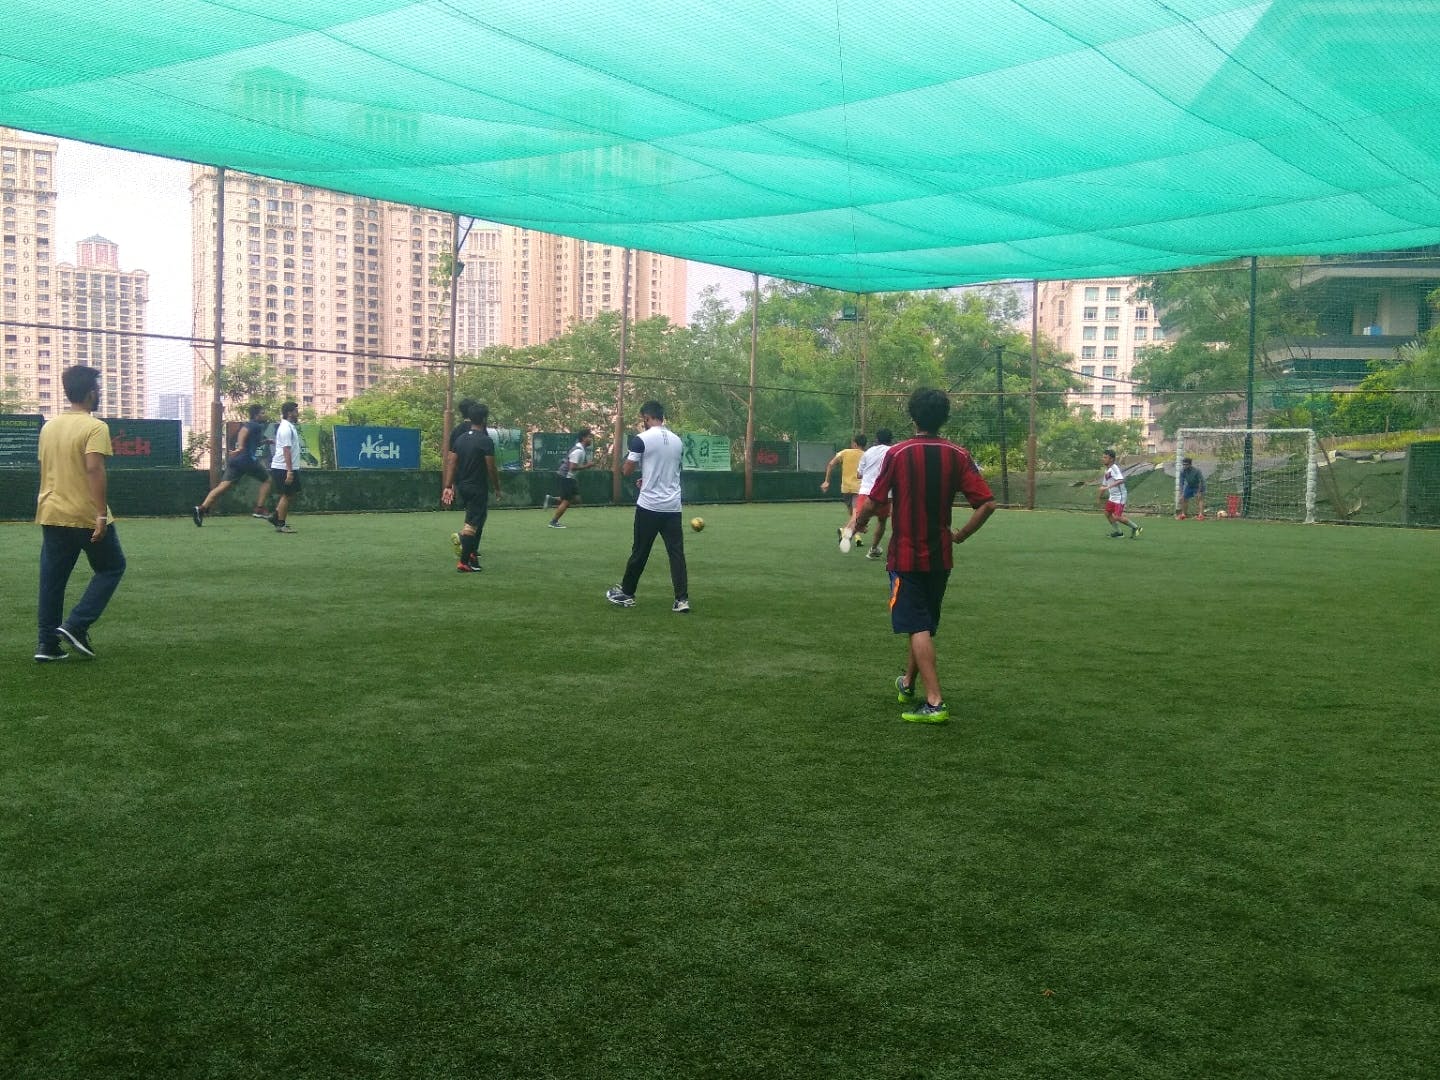 Soccer,Team sport,Sports,Grass,Ball game,Football,Football player,Sport venue,Player,Soccer-specific stadium